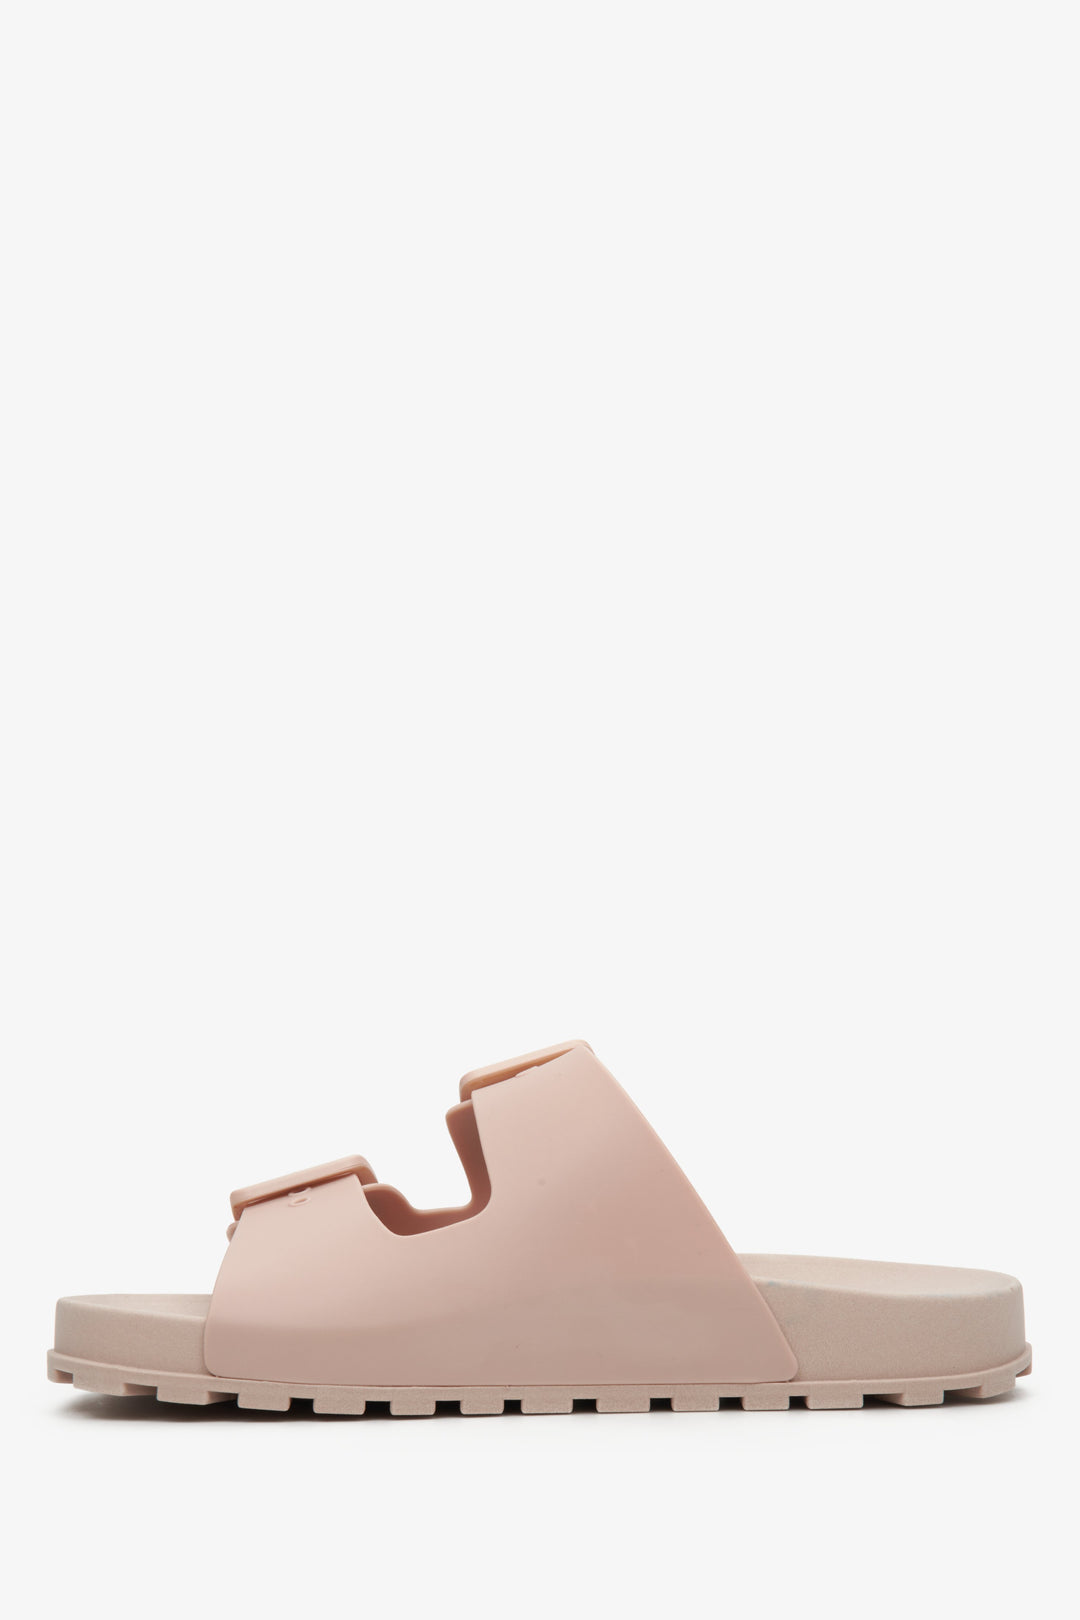 Rubber, light pink women's flip-flops by Estro - shoe profile.